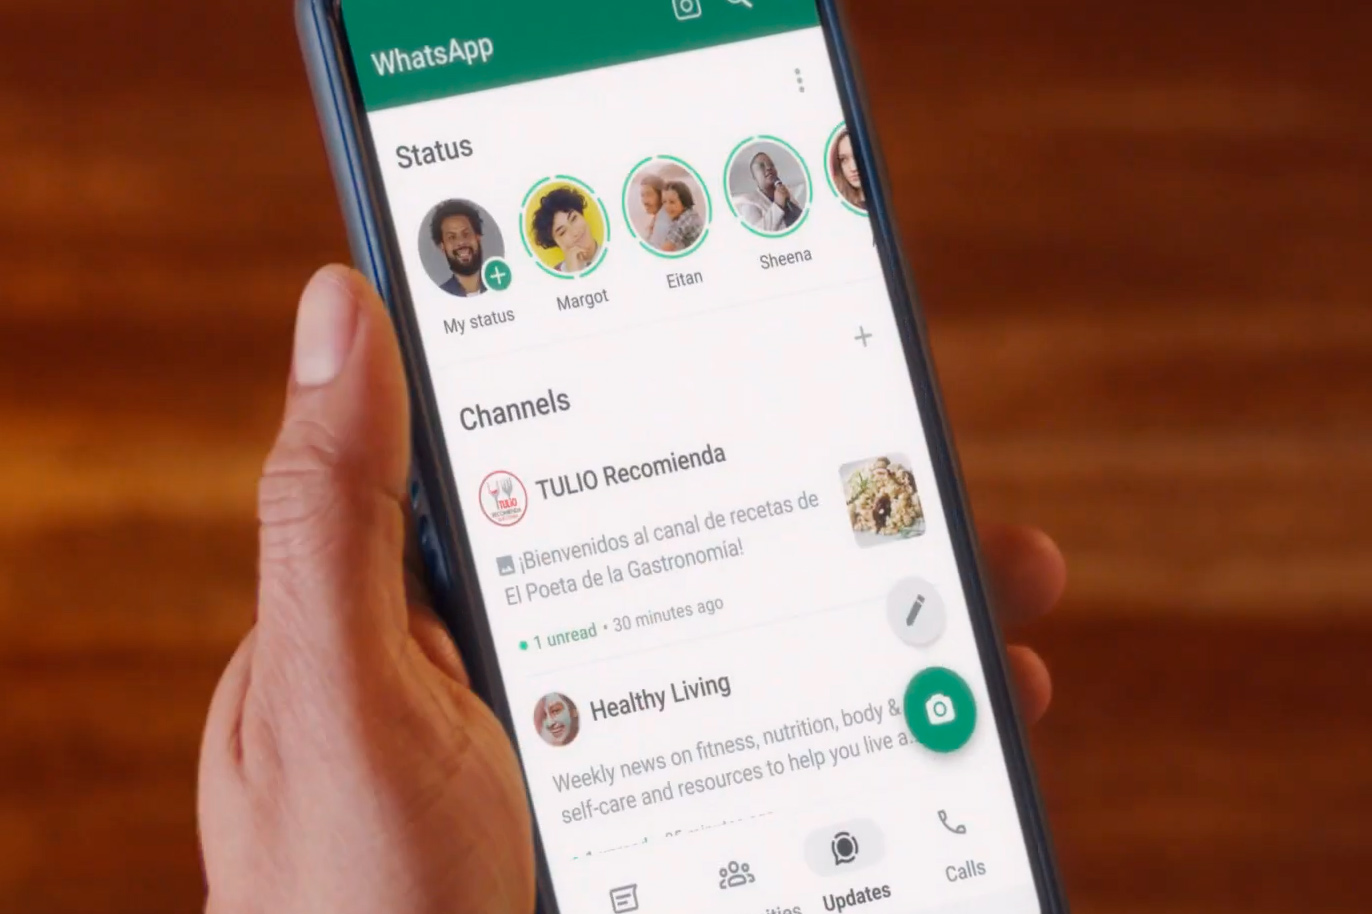 WhatsApp está ampliando los ‘Canales’ y añadiendo nuevas características.